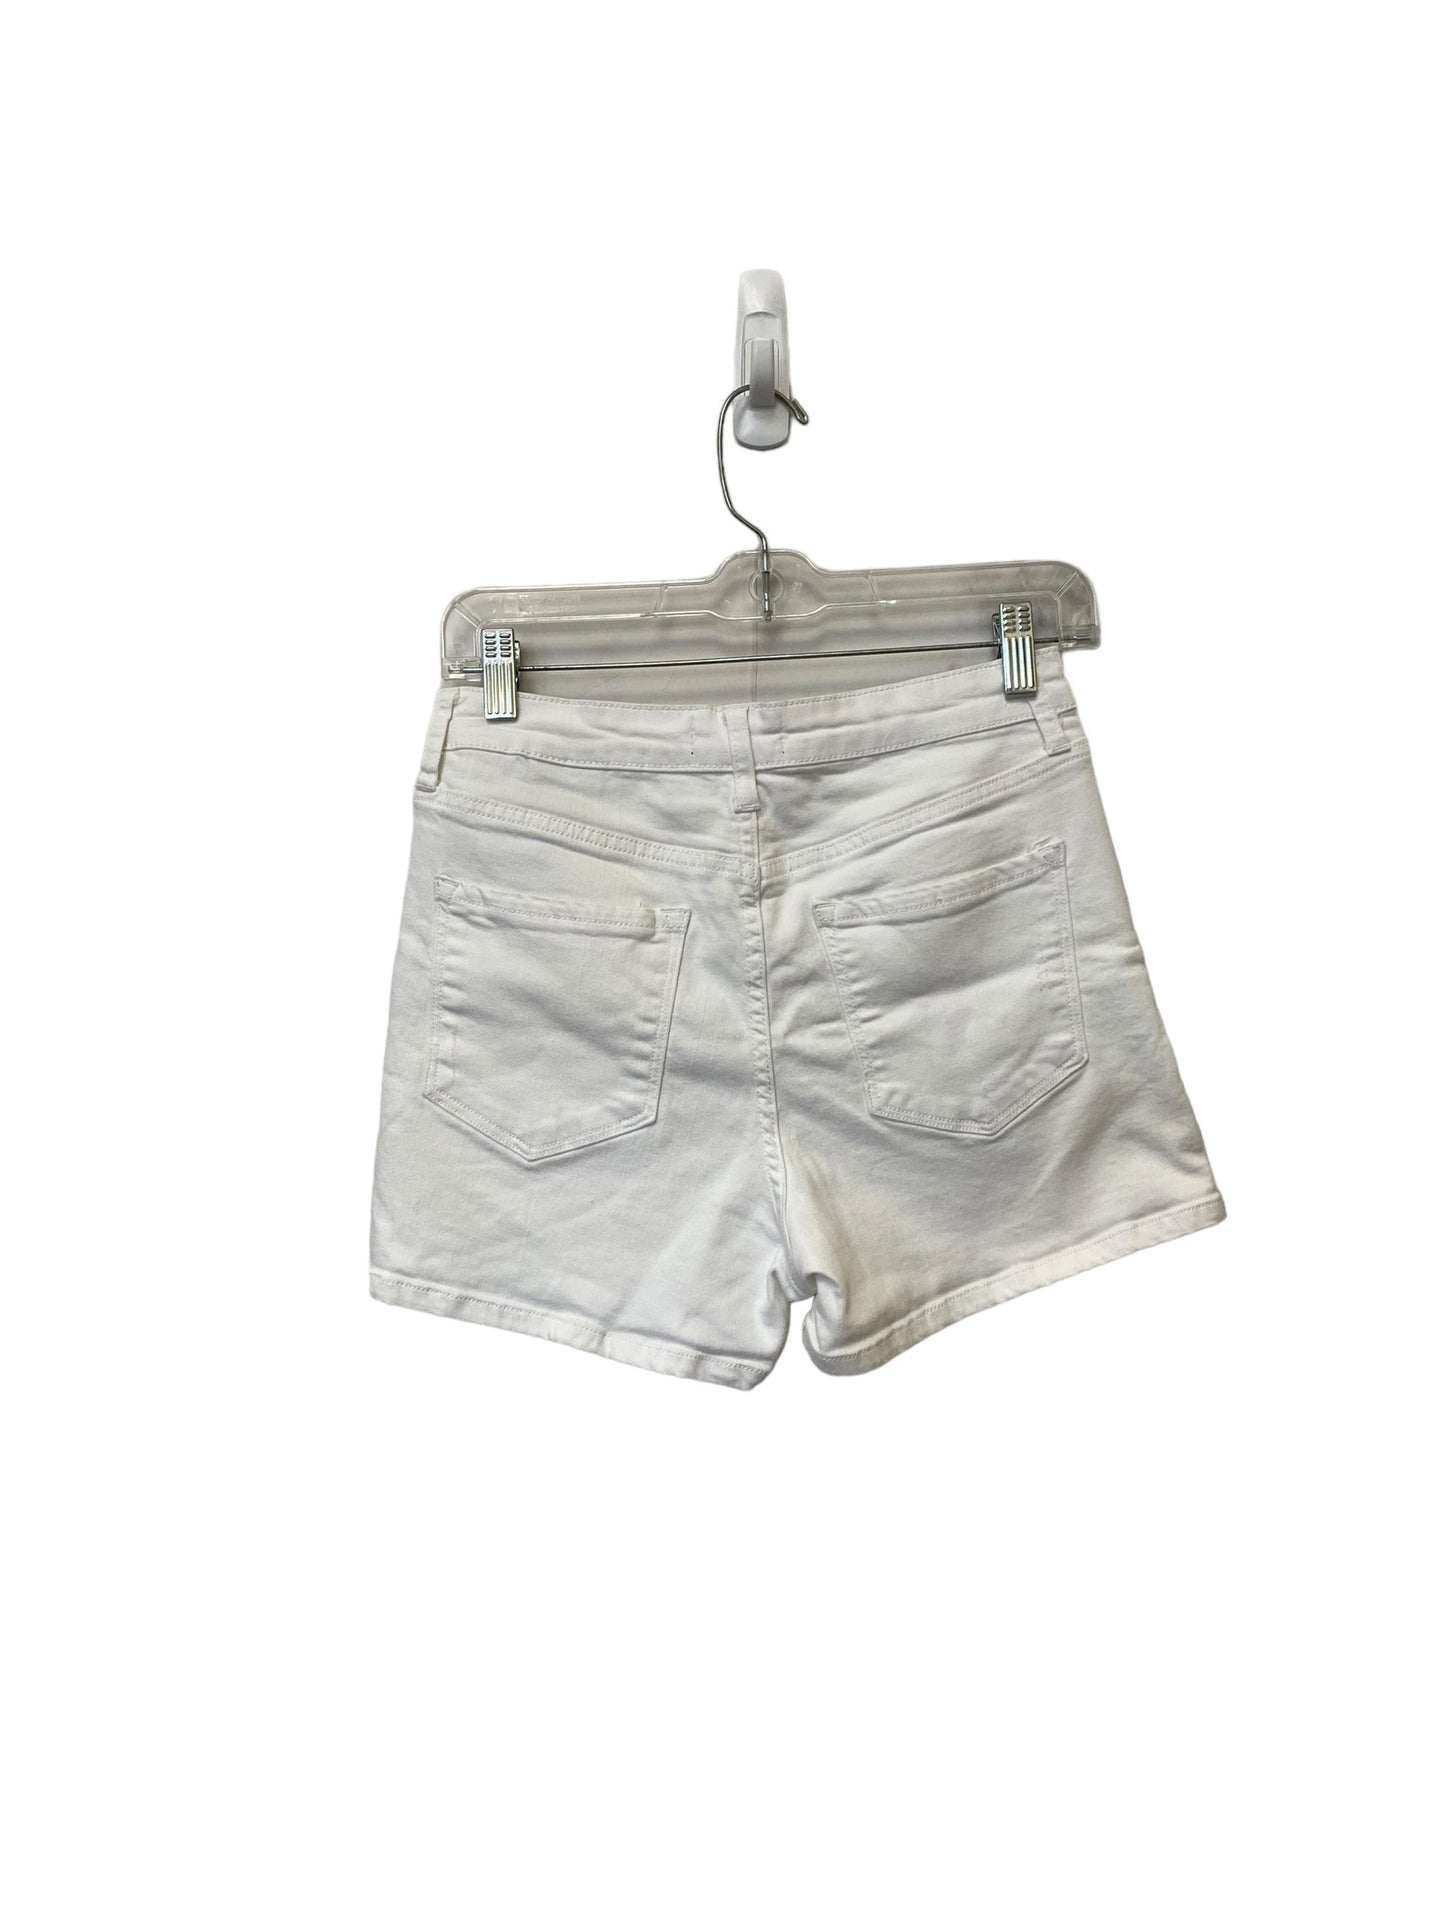 White Shorts Vervet, Size M